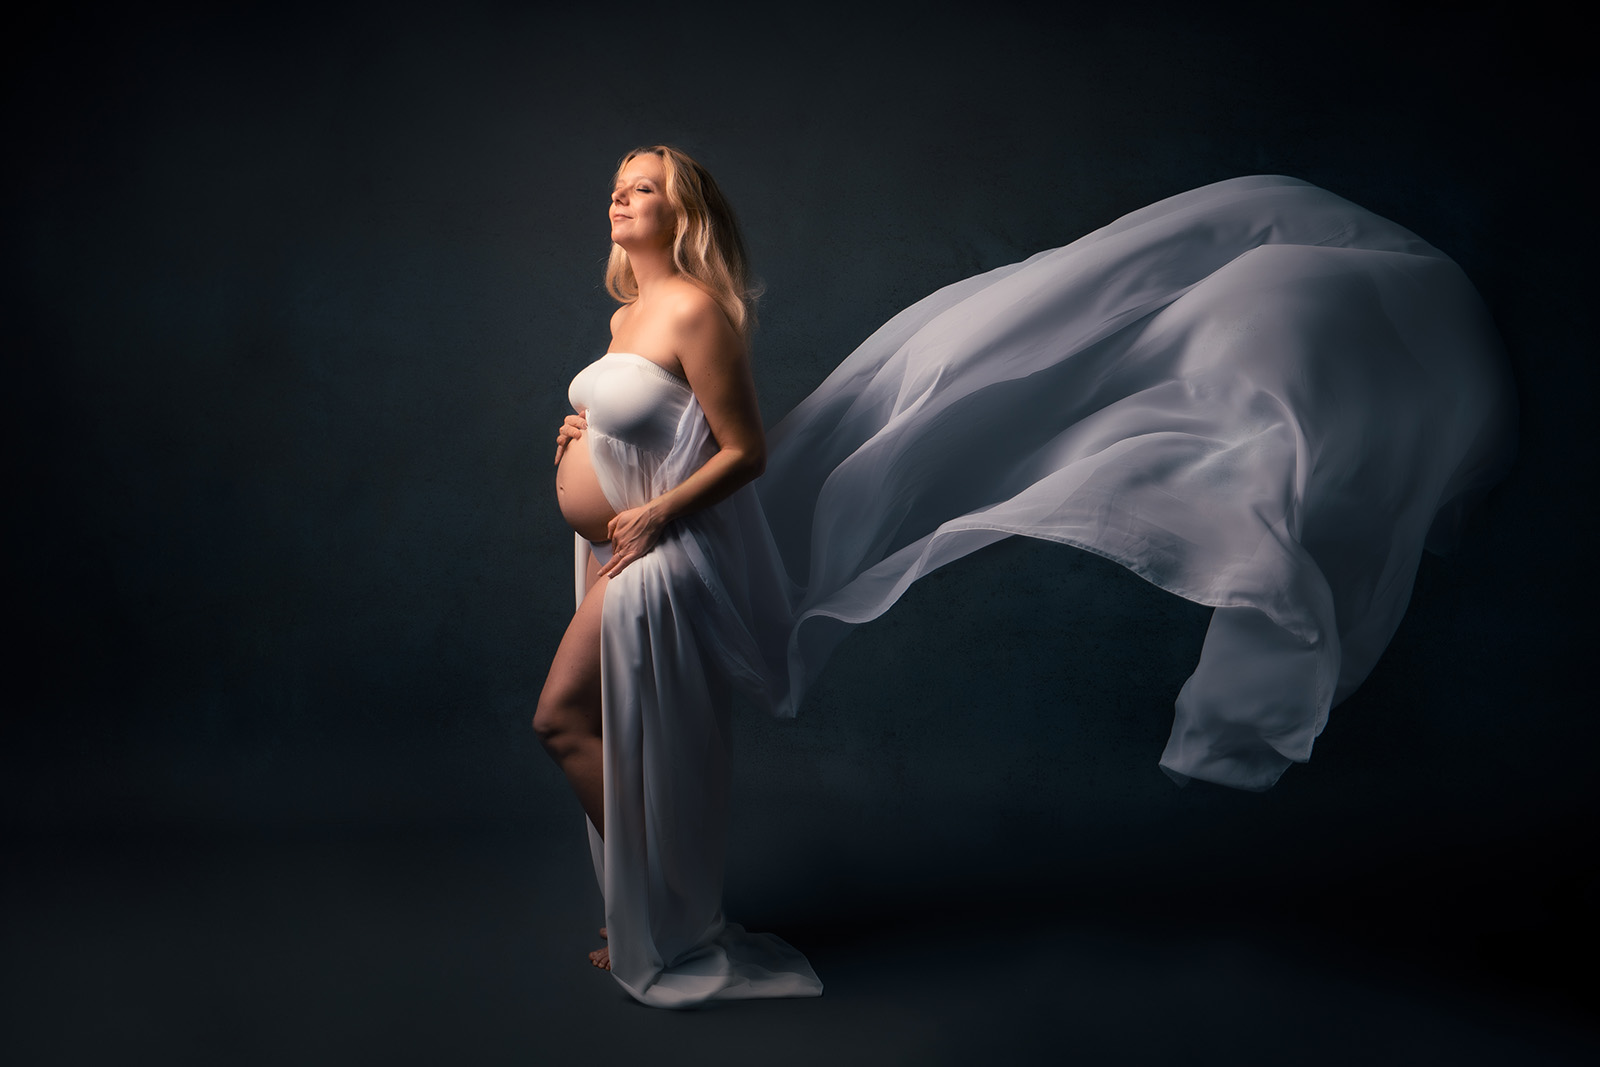 femme enceinte blonde habillée d'une robe en voile blanc dont la partir arrière vole. Elle a les yeux fermés , la tête inclinée vers le haut et elle ferme les yeux